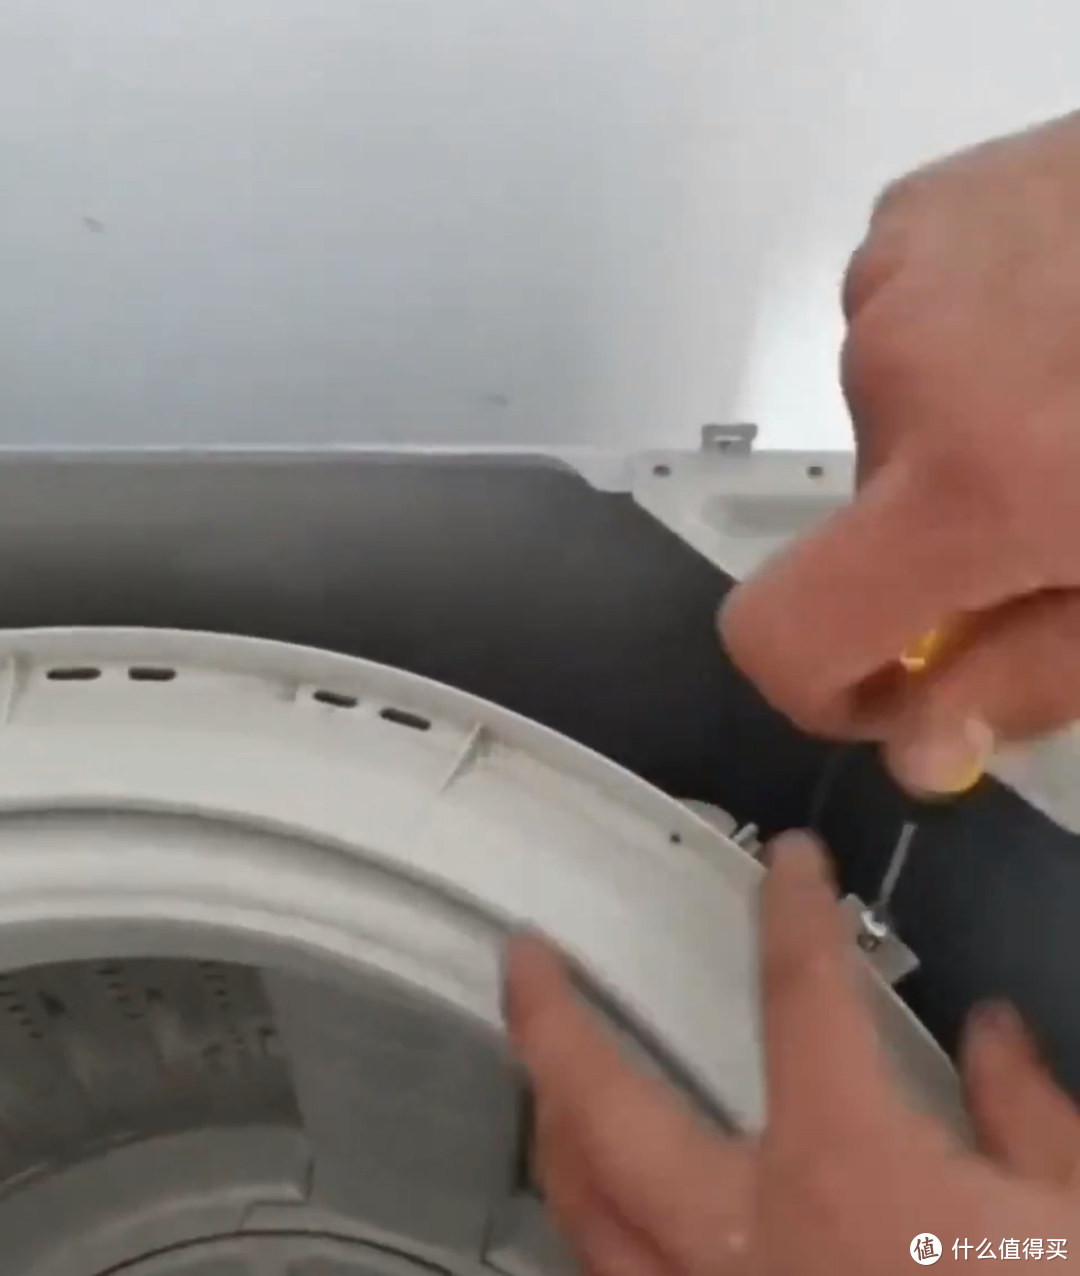 自己买拆卸洗衣机工具进行波轮洗衣机拆洗，其实也不难。